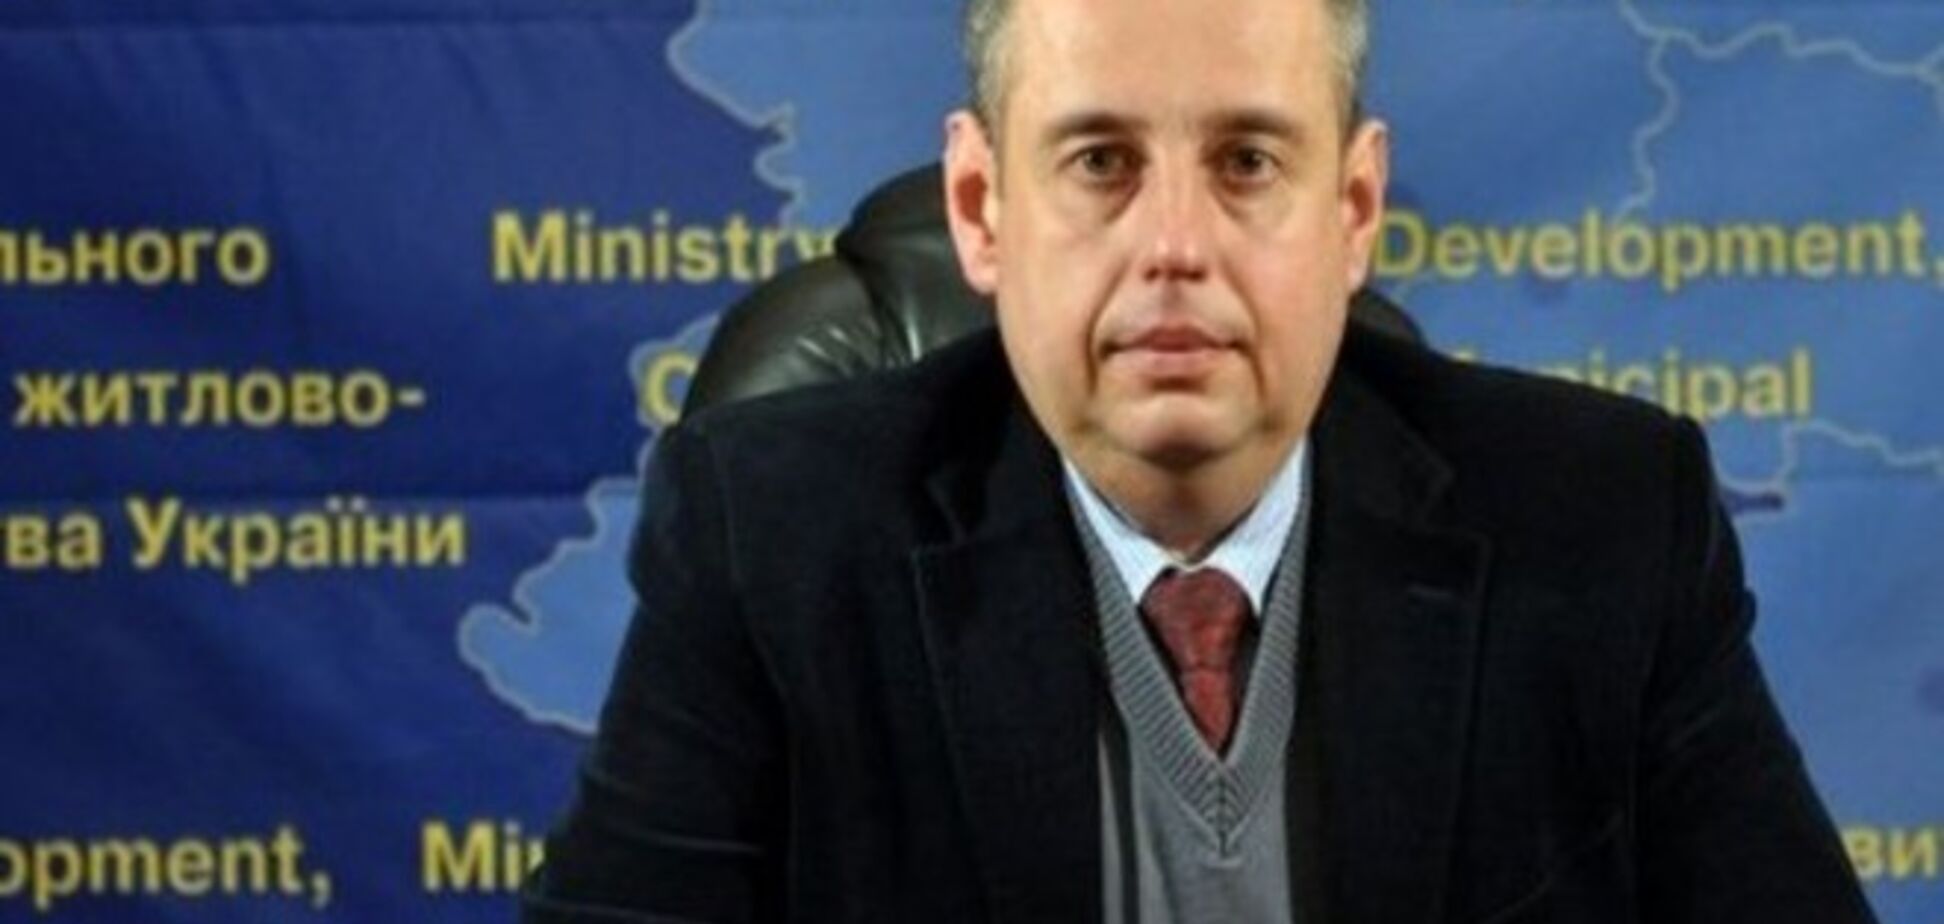 Вице-премьер Зубко защитил замминистра Исаенко, без разбирательств уволенного Яценюком